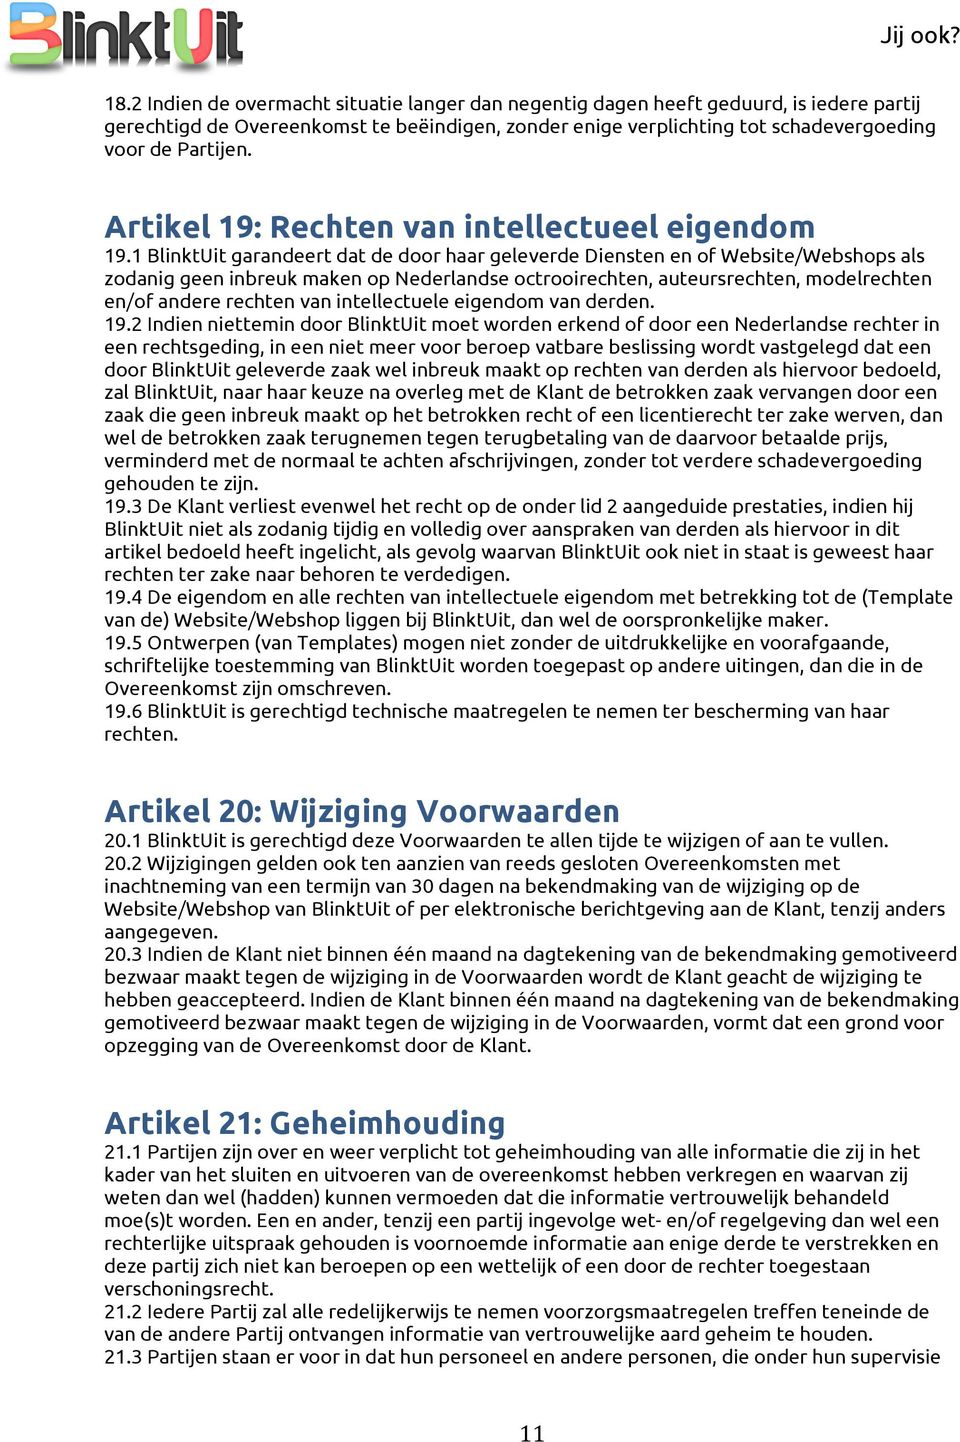 1 BlinktUit garandeert dat de door haar geleverde Diensten en of Website/Webshops als zodanig geen inbreuk maken op Nederlandse octrooirechten, auteursrechten, modelrechten en/of andere rechten van